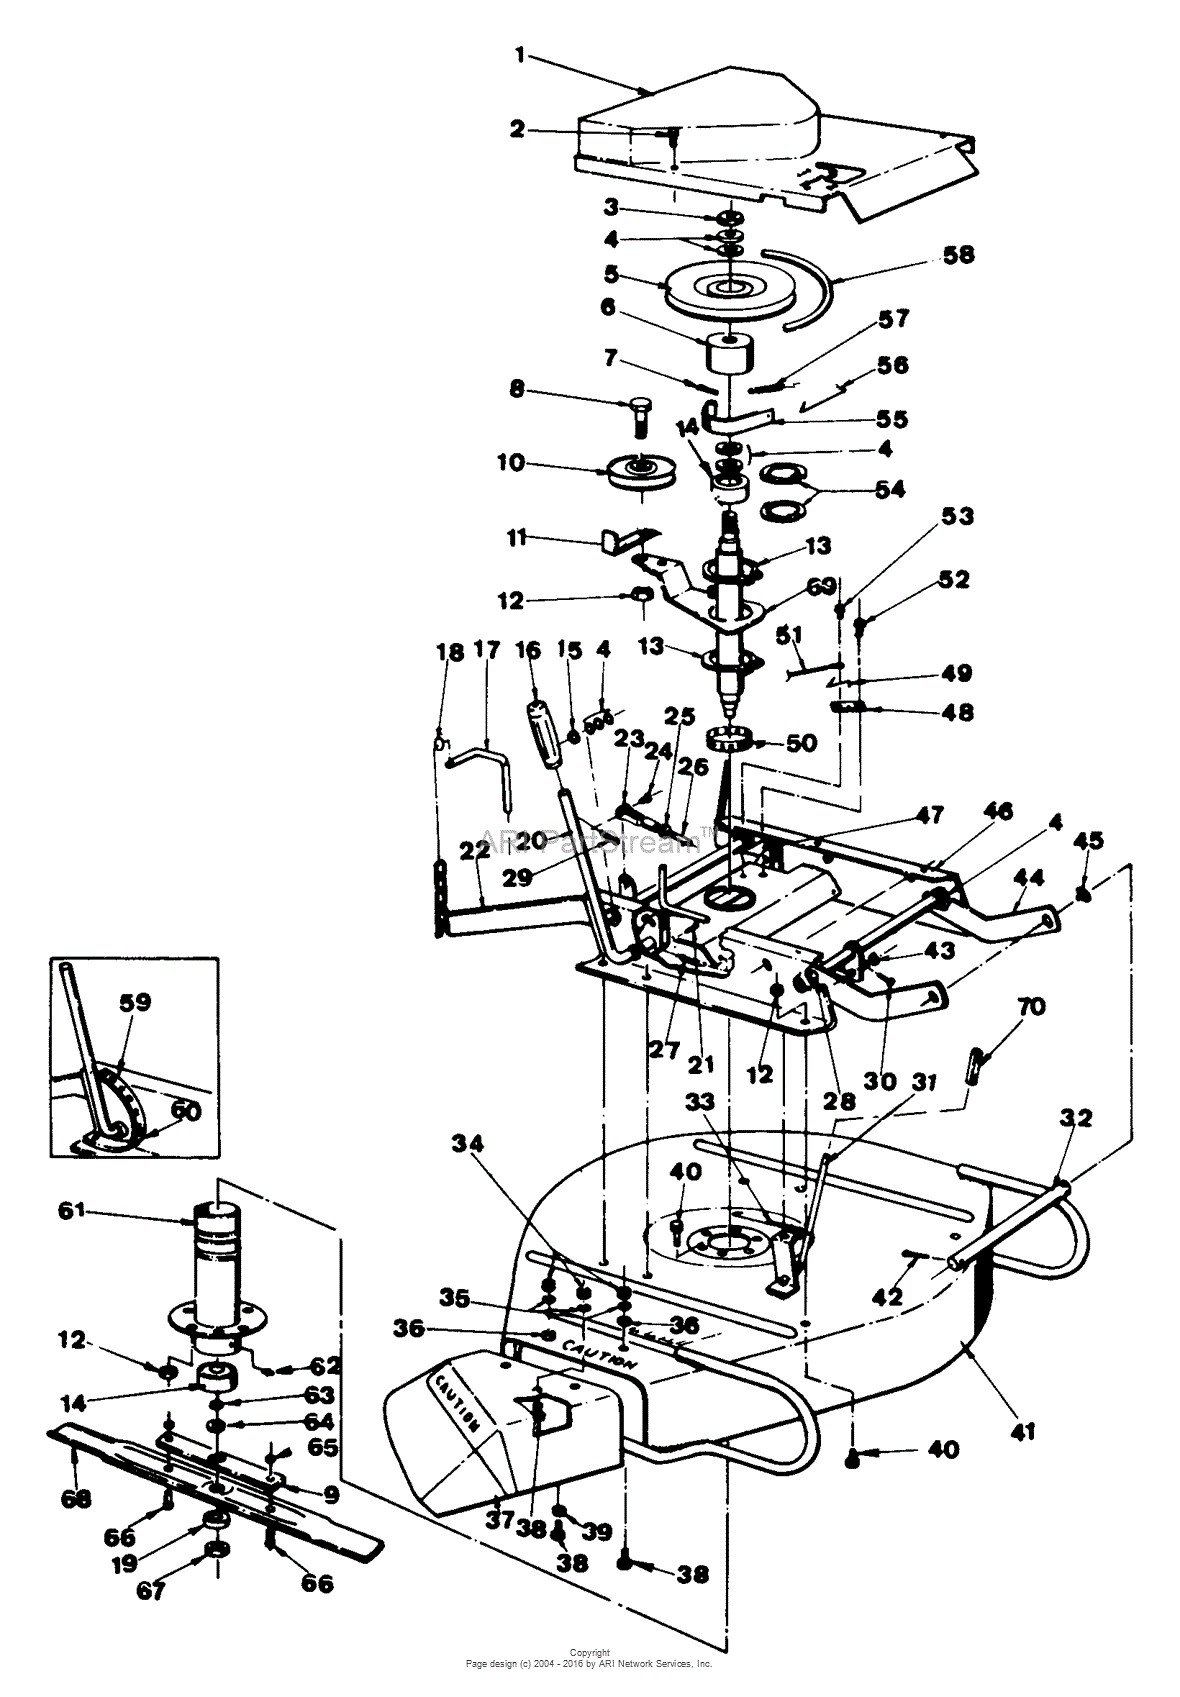 Honda Engine Parts Diagram Snapper 2680 26" 8 Hp Rear Engine Rider Series 0 Parts Diagram for Of Honda Engine Parts Diagram